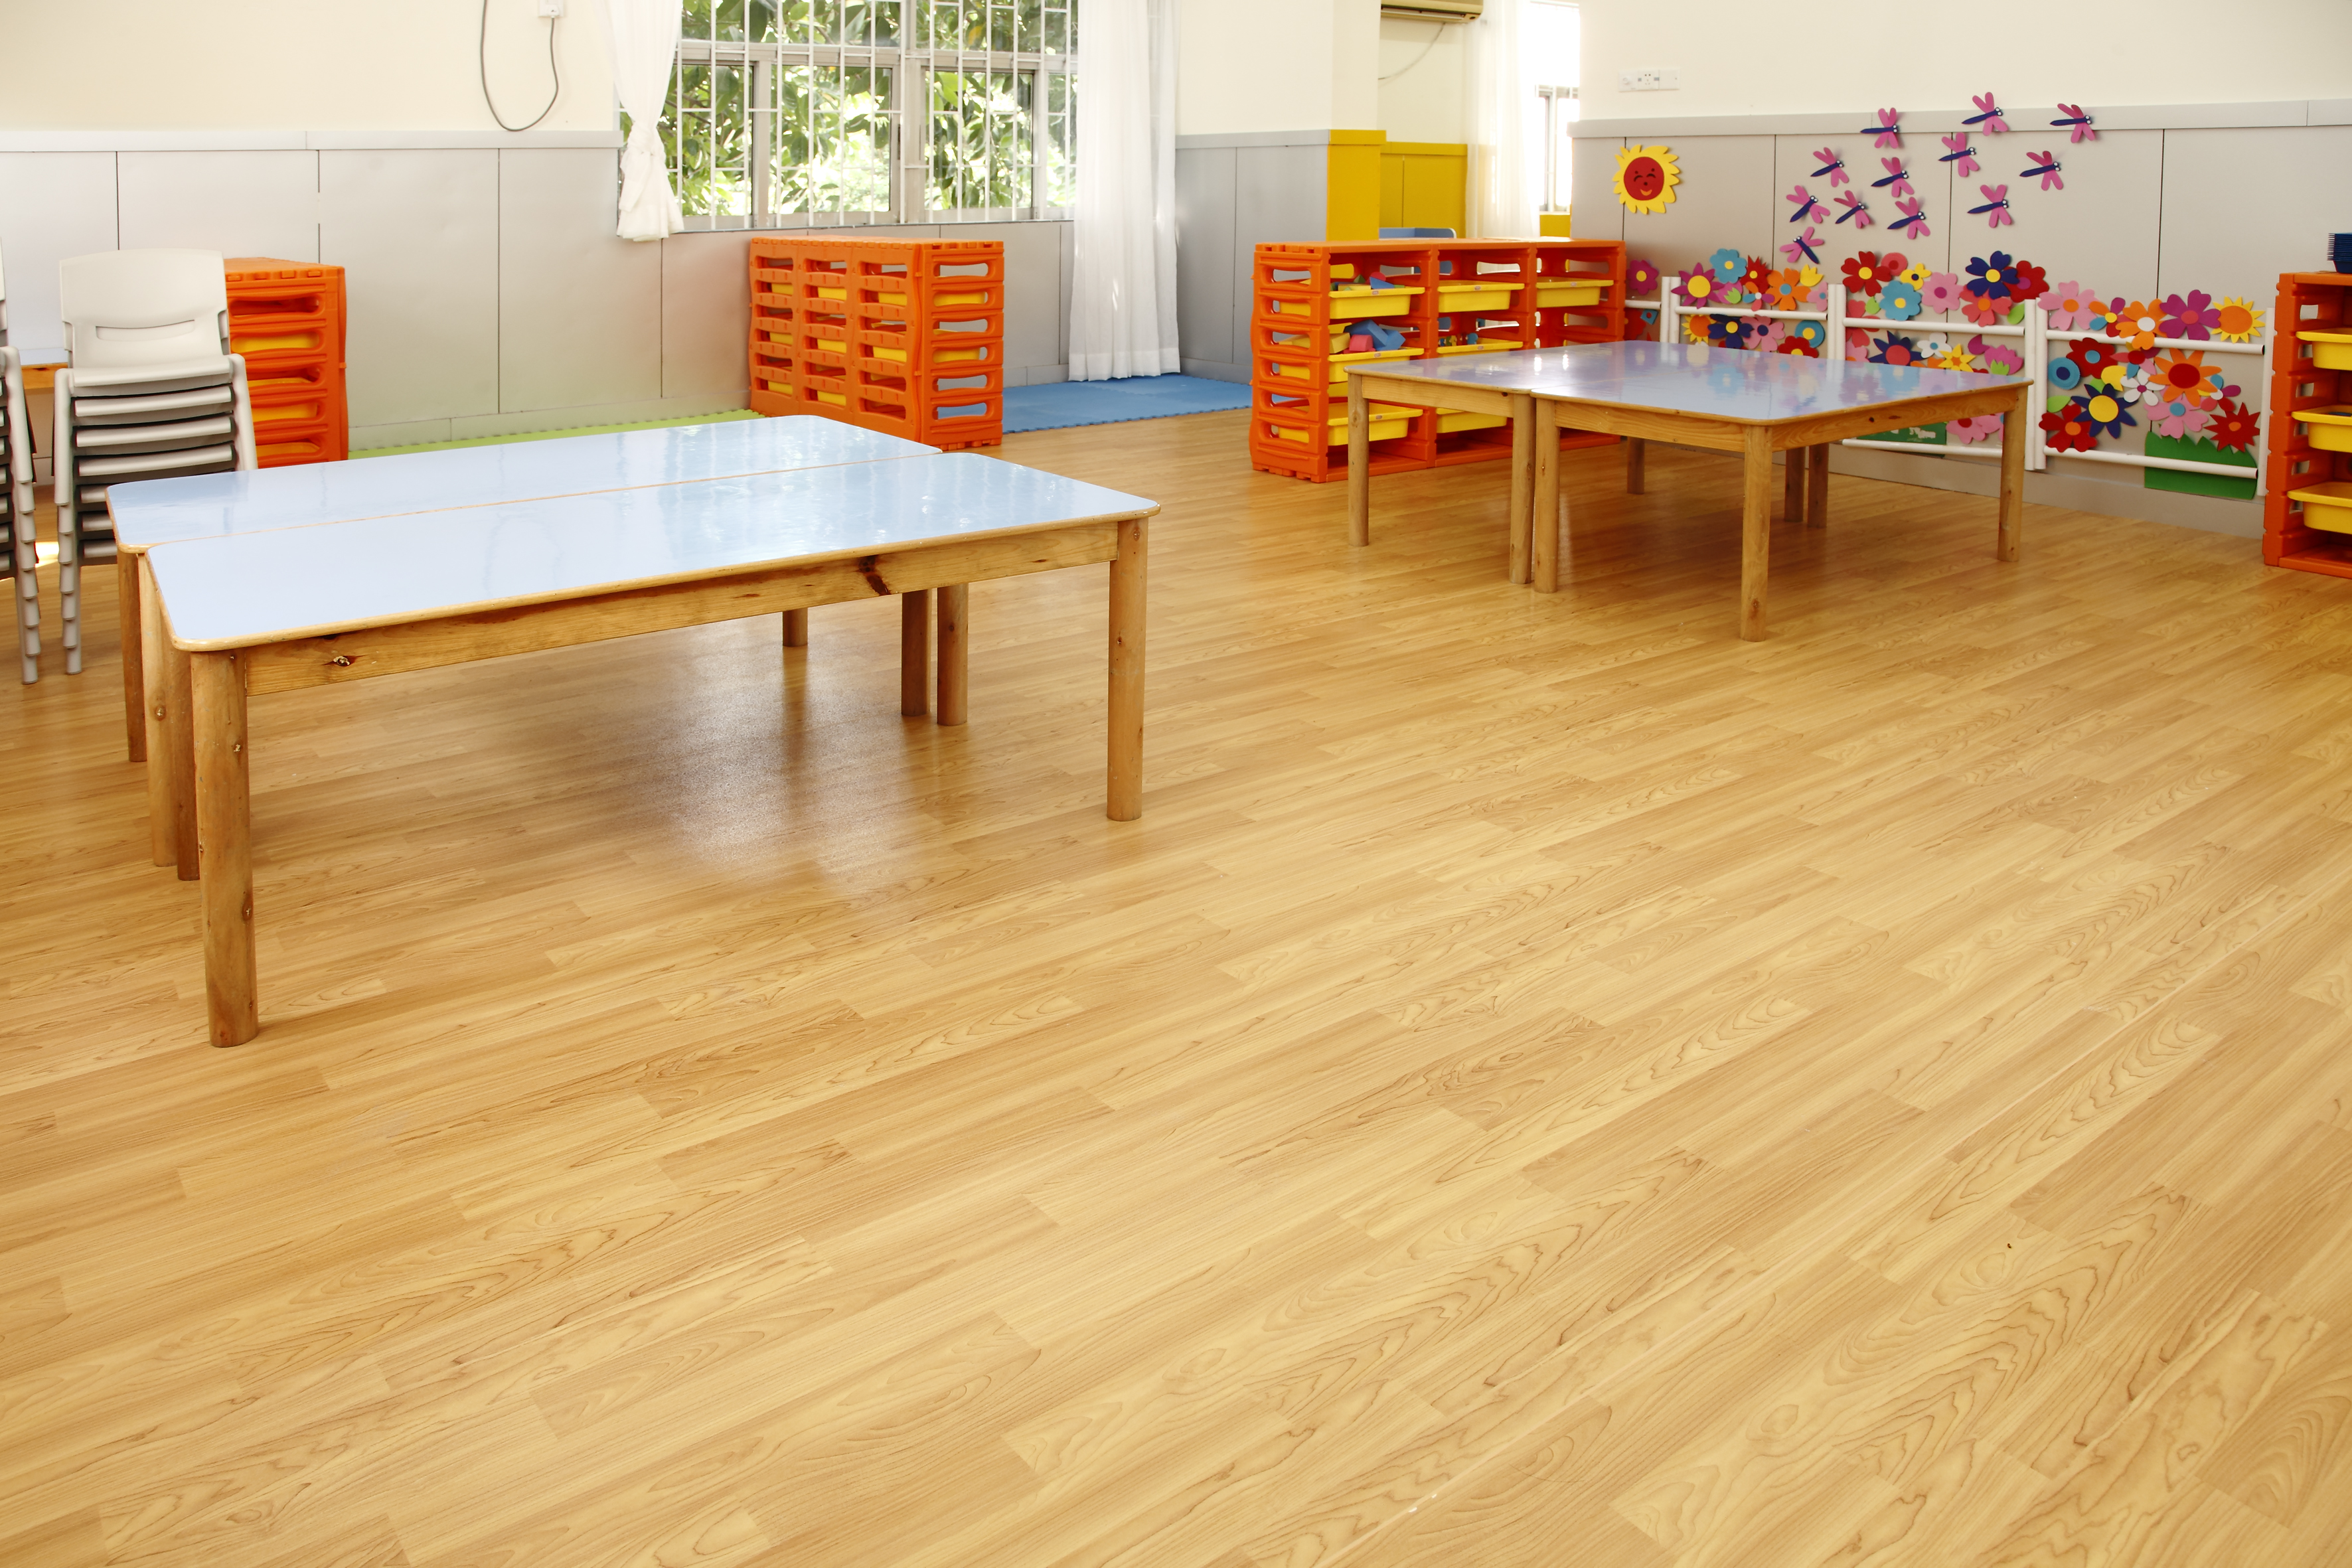 塑胶地板在幼儿园广泛应用的原因【腾方PVC地板】